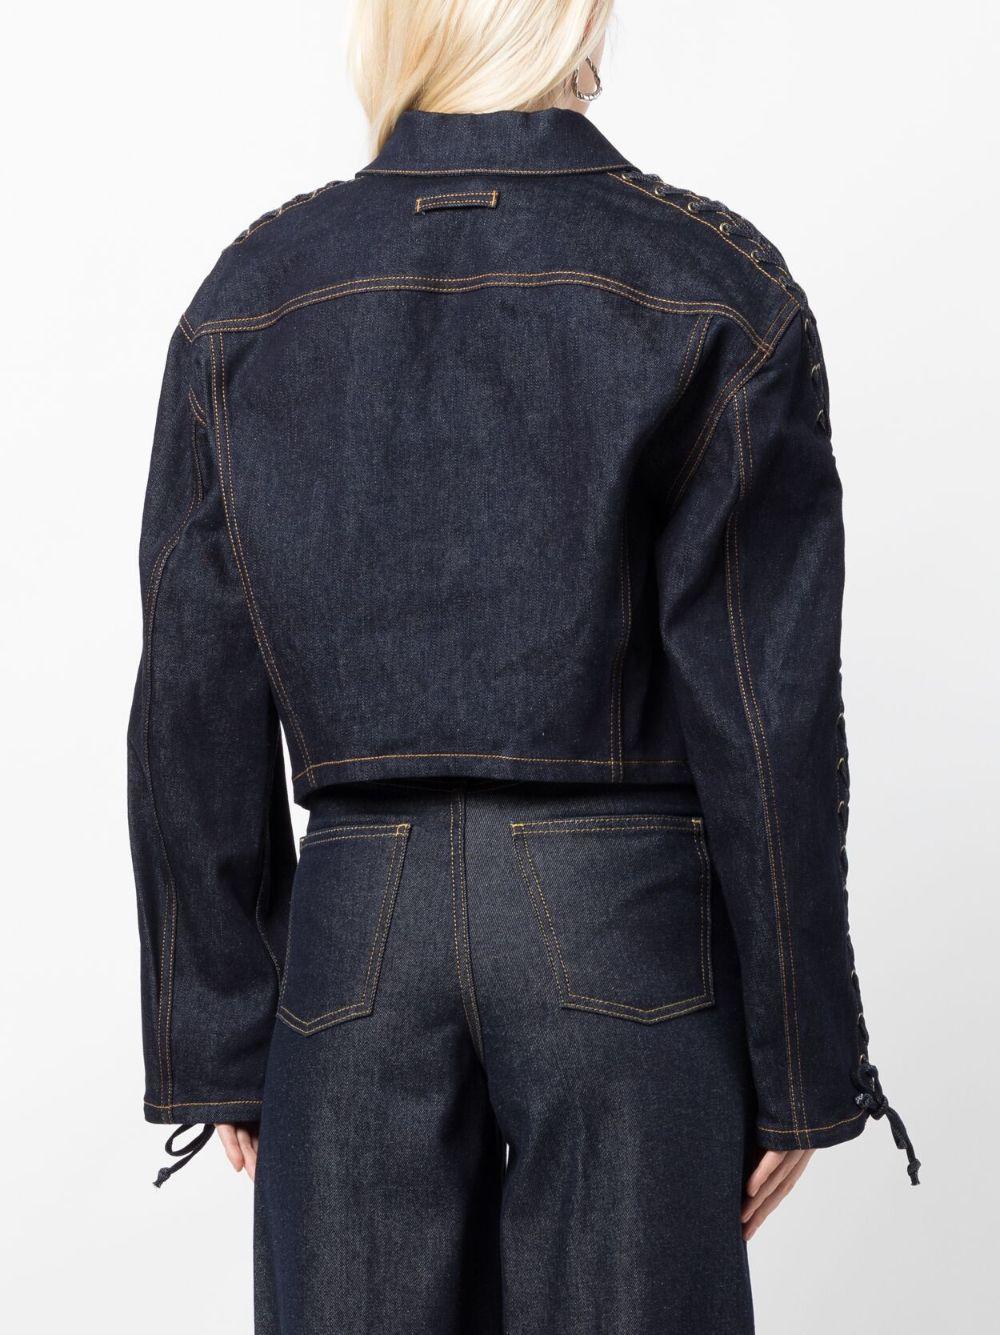 Jean Paul Gaultier Lace-up Cropped Denim Jacket in Blue | Lyst